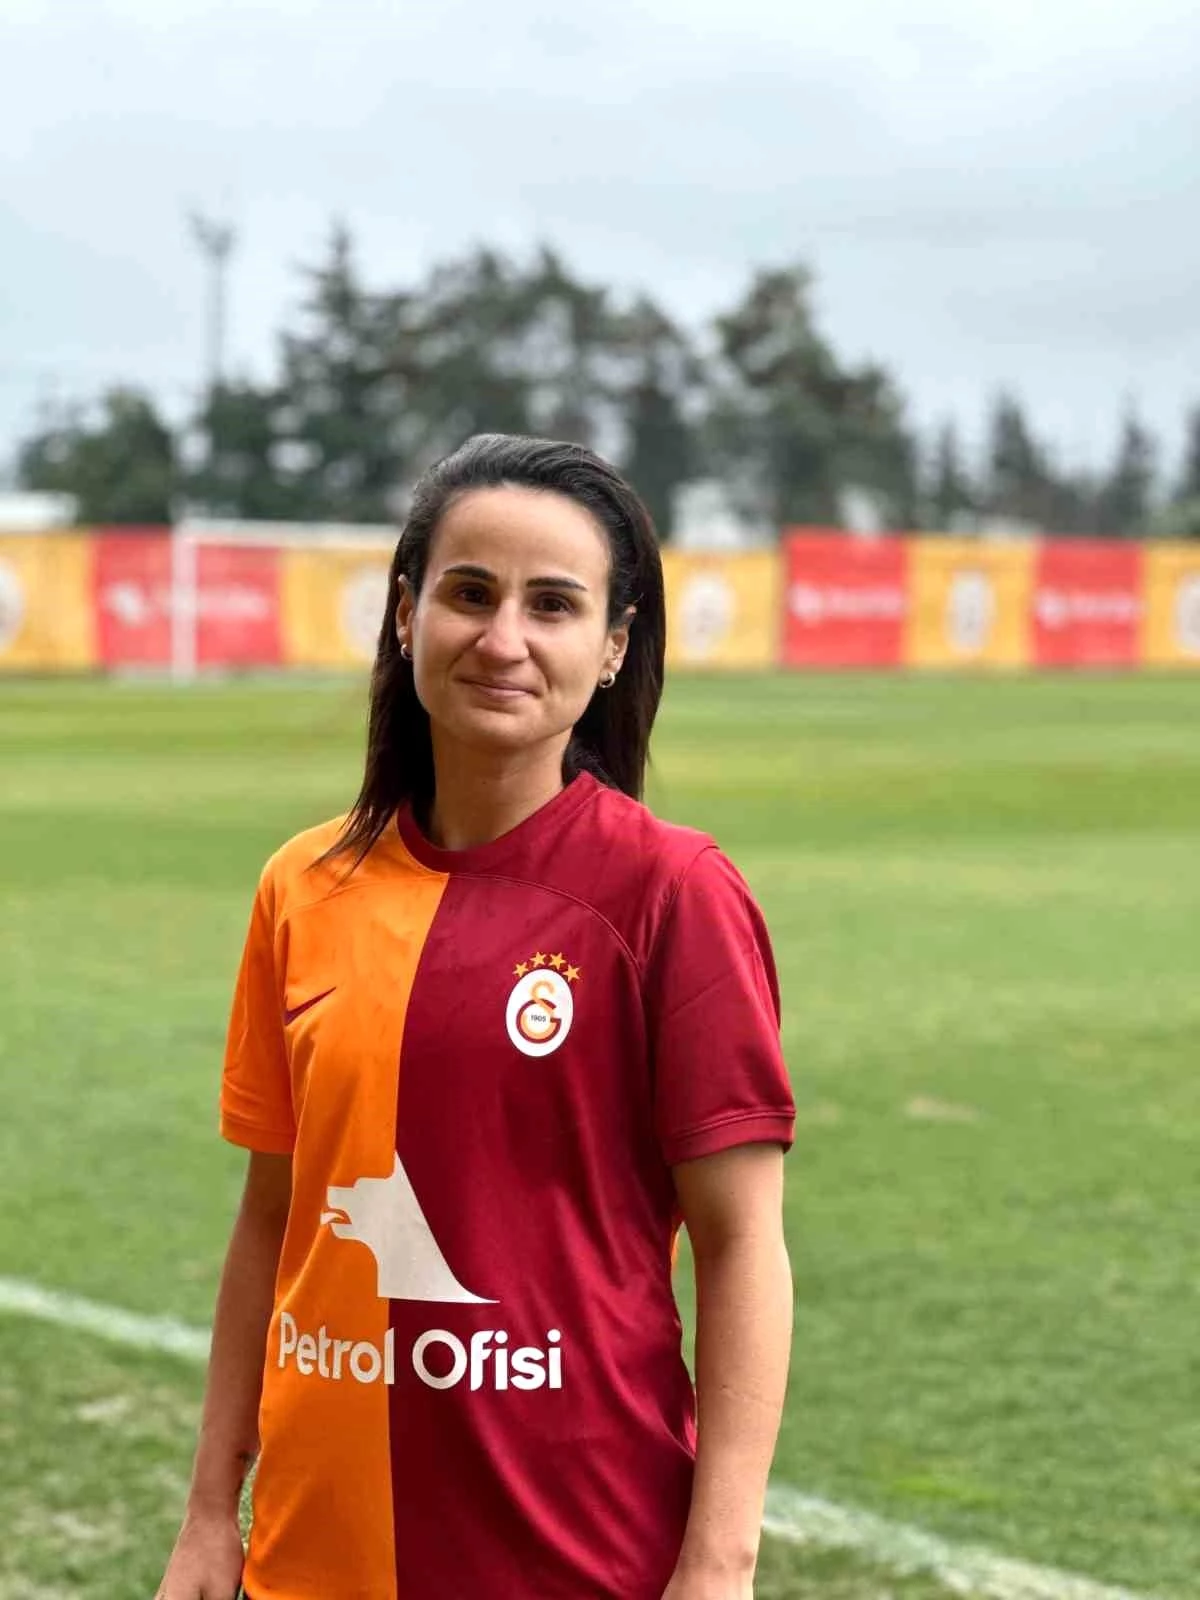 Galatasaray Petrol Ofisi Kadın Futbol Takımı, Arzu Karabulut ile sözleşme imzaladı